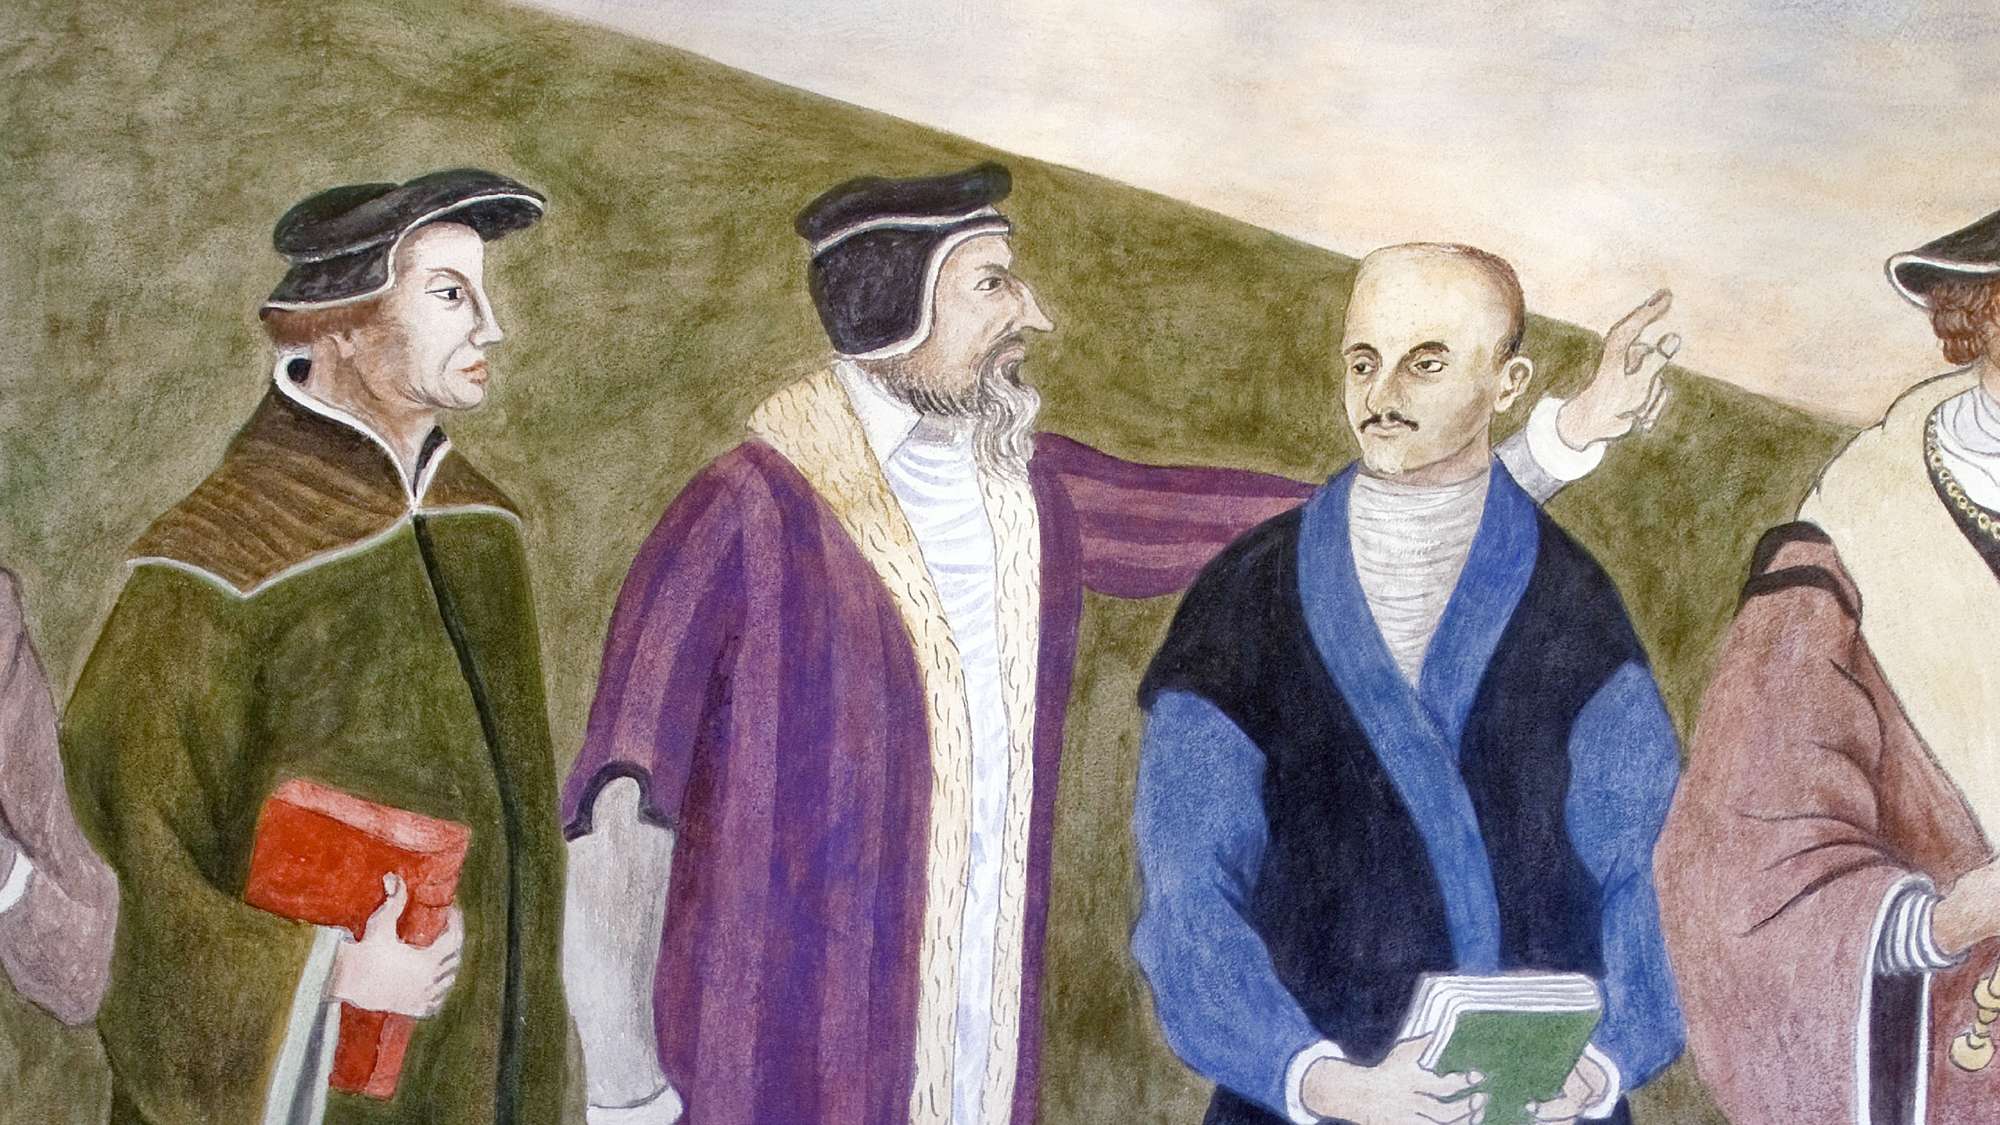 Die Reformatoren Ulrich Zwingli und Johannes Calvin und der spanische Ordensgründer Ignatius von Loyola (v.l.n.r.) auf dem Wandgemälde 'Versöhnte Einheit' in der Dorfkirche Alt-Staaken (Berlin-Spandau).